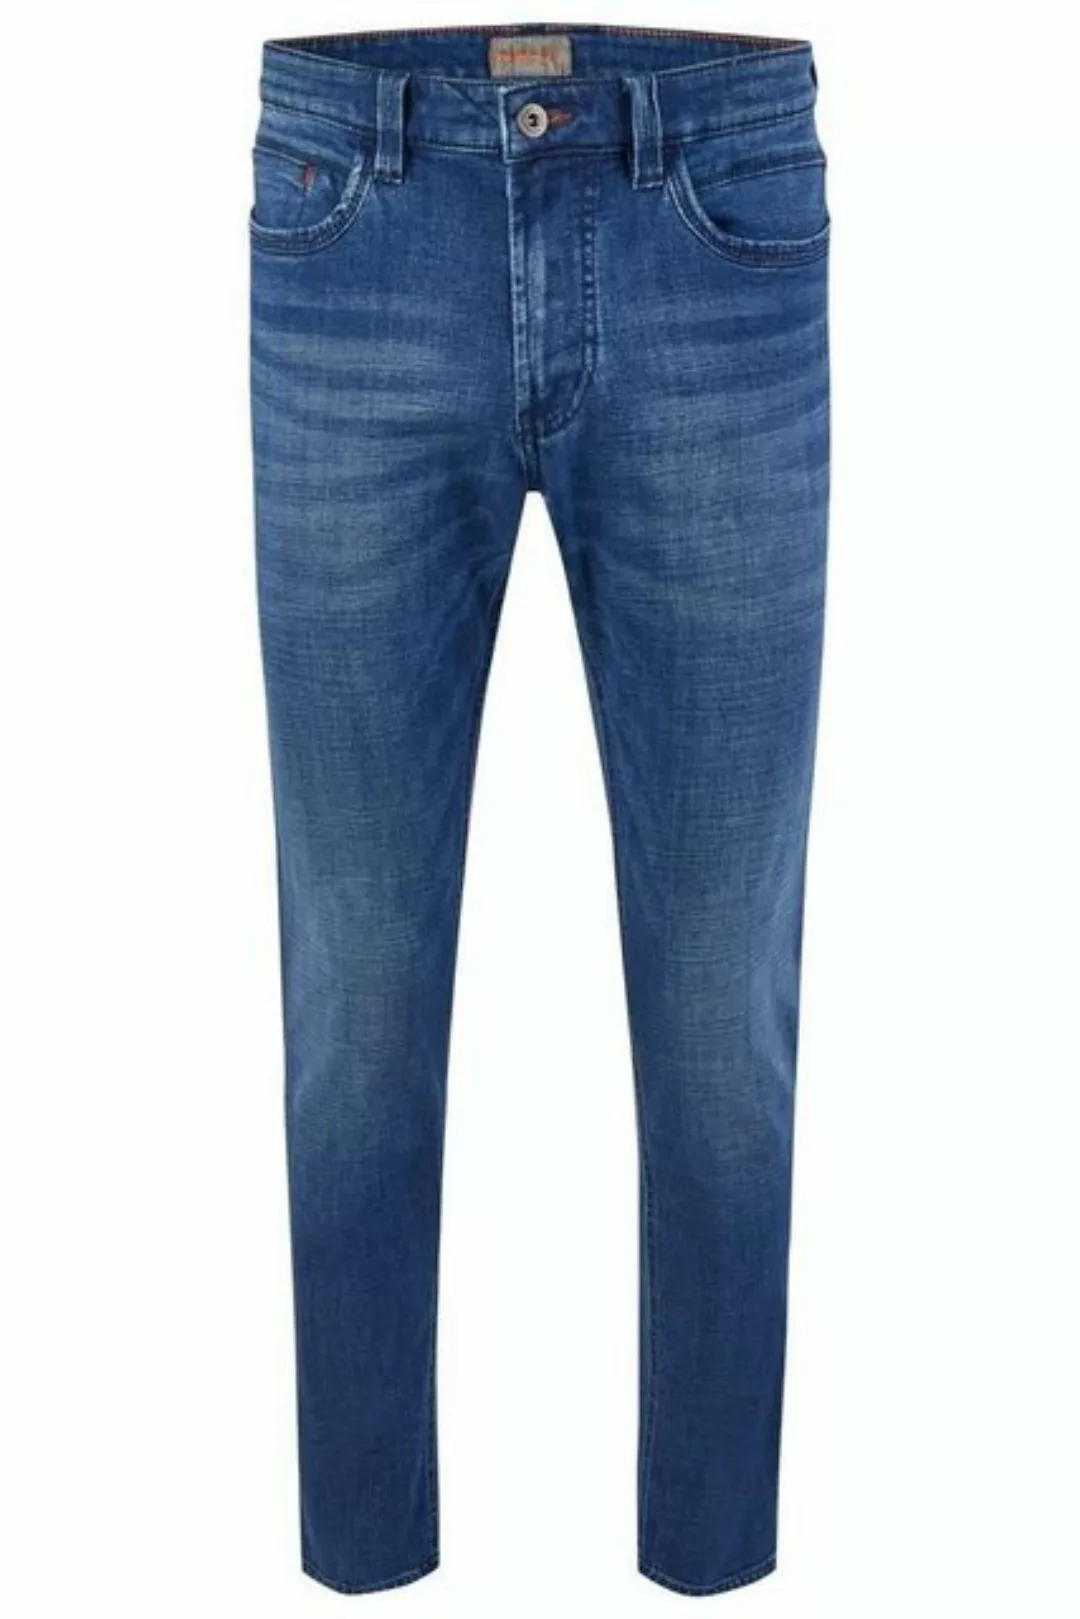 Hattric 5-Pocket-Jeans Harris 5 Pocket Modern Denim Jeans Herren 5-Pockets günstig online kaufen